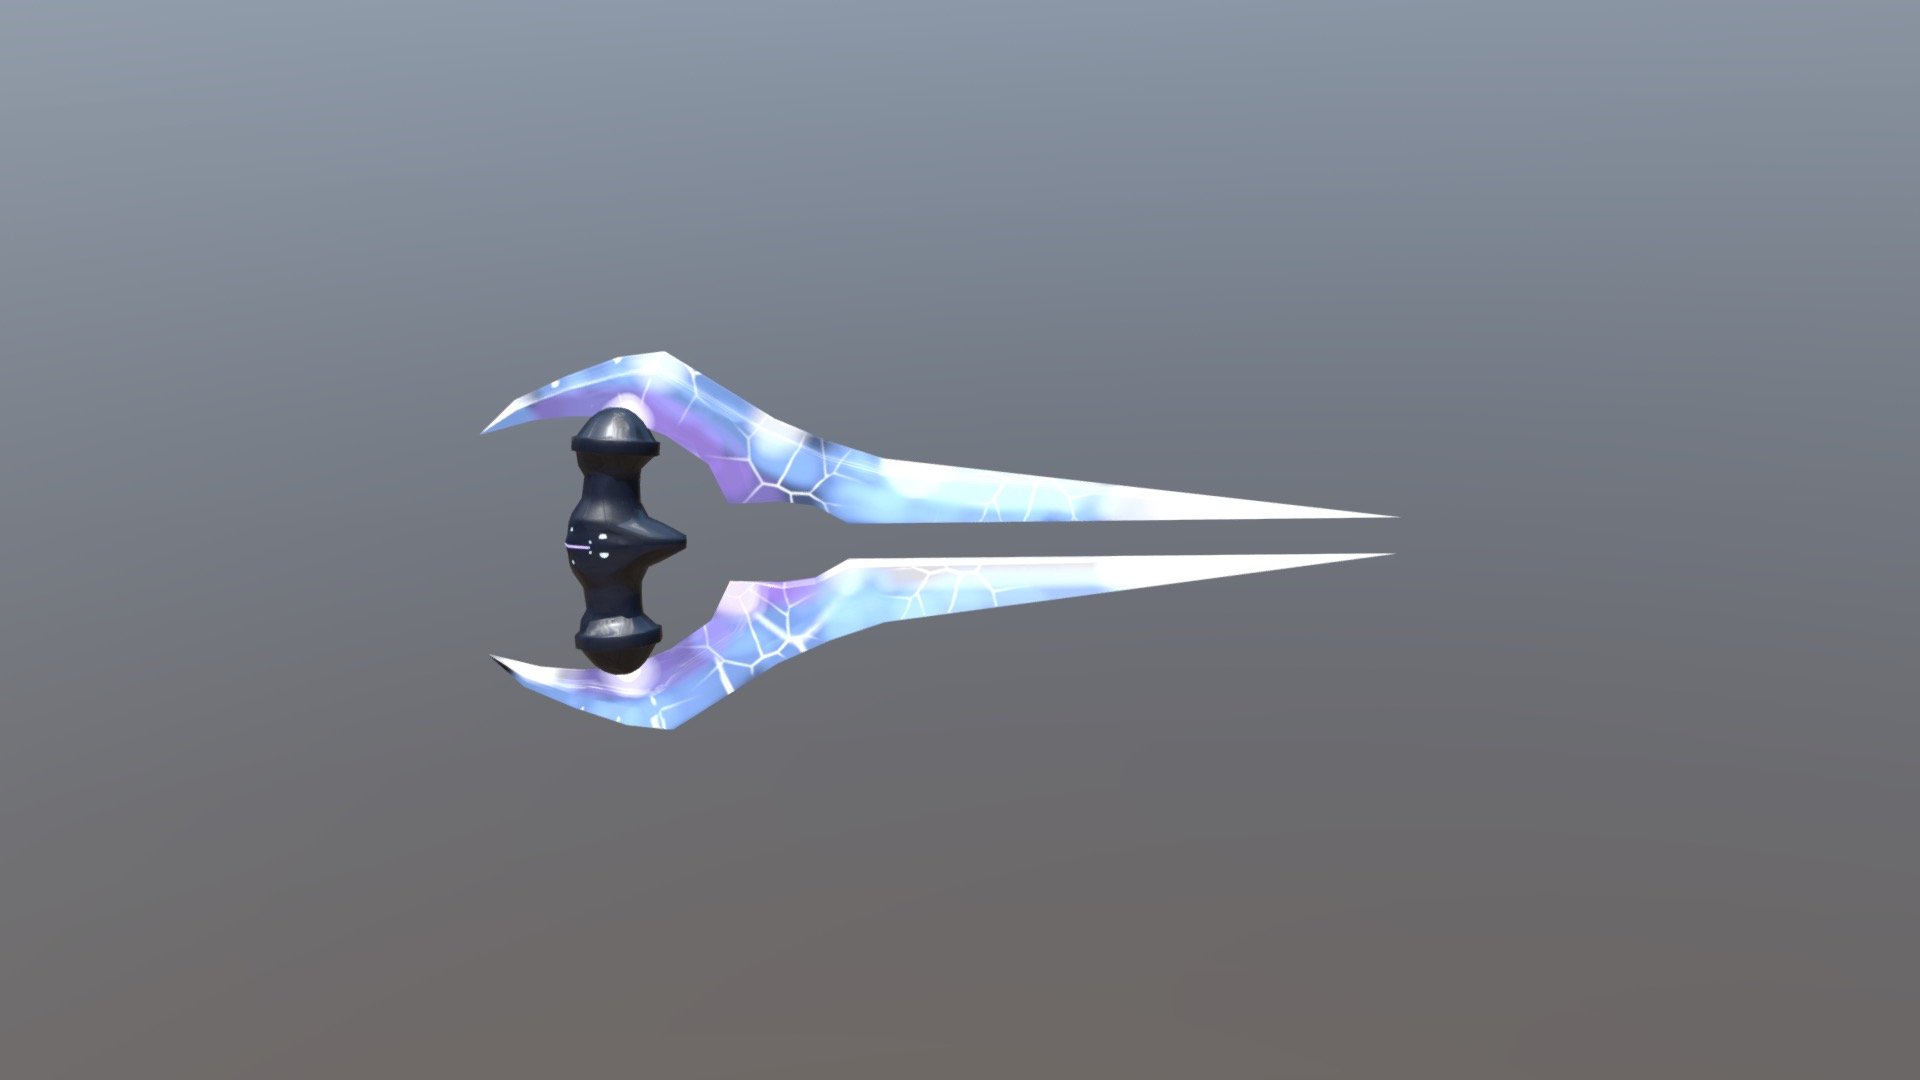 Halo's Energy Sword